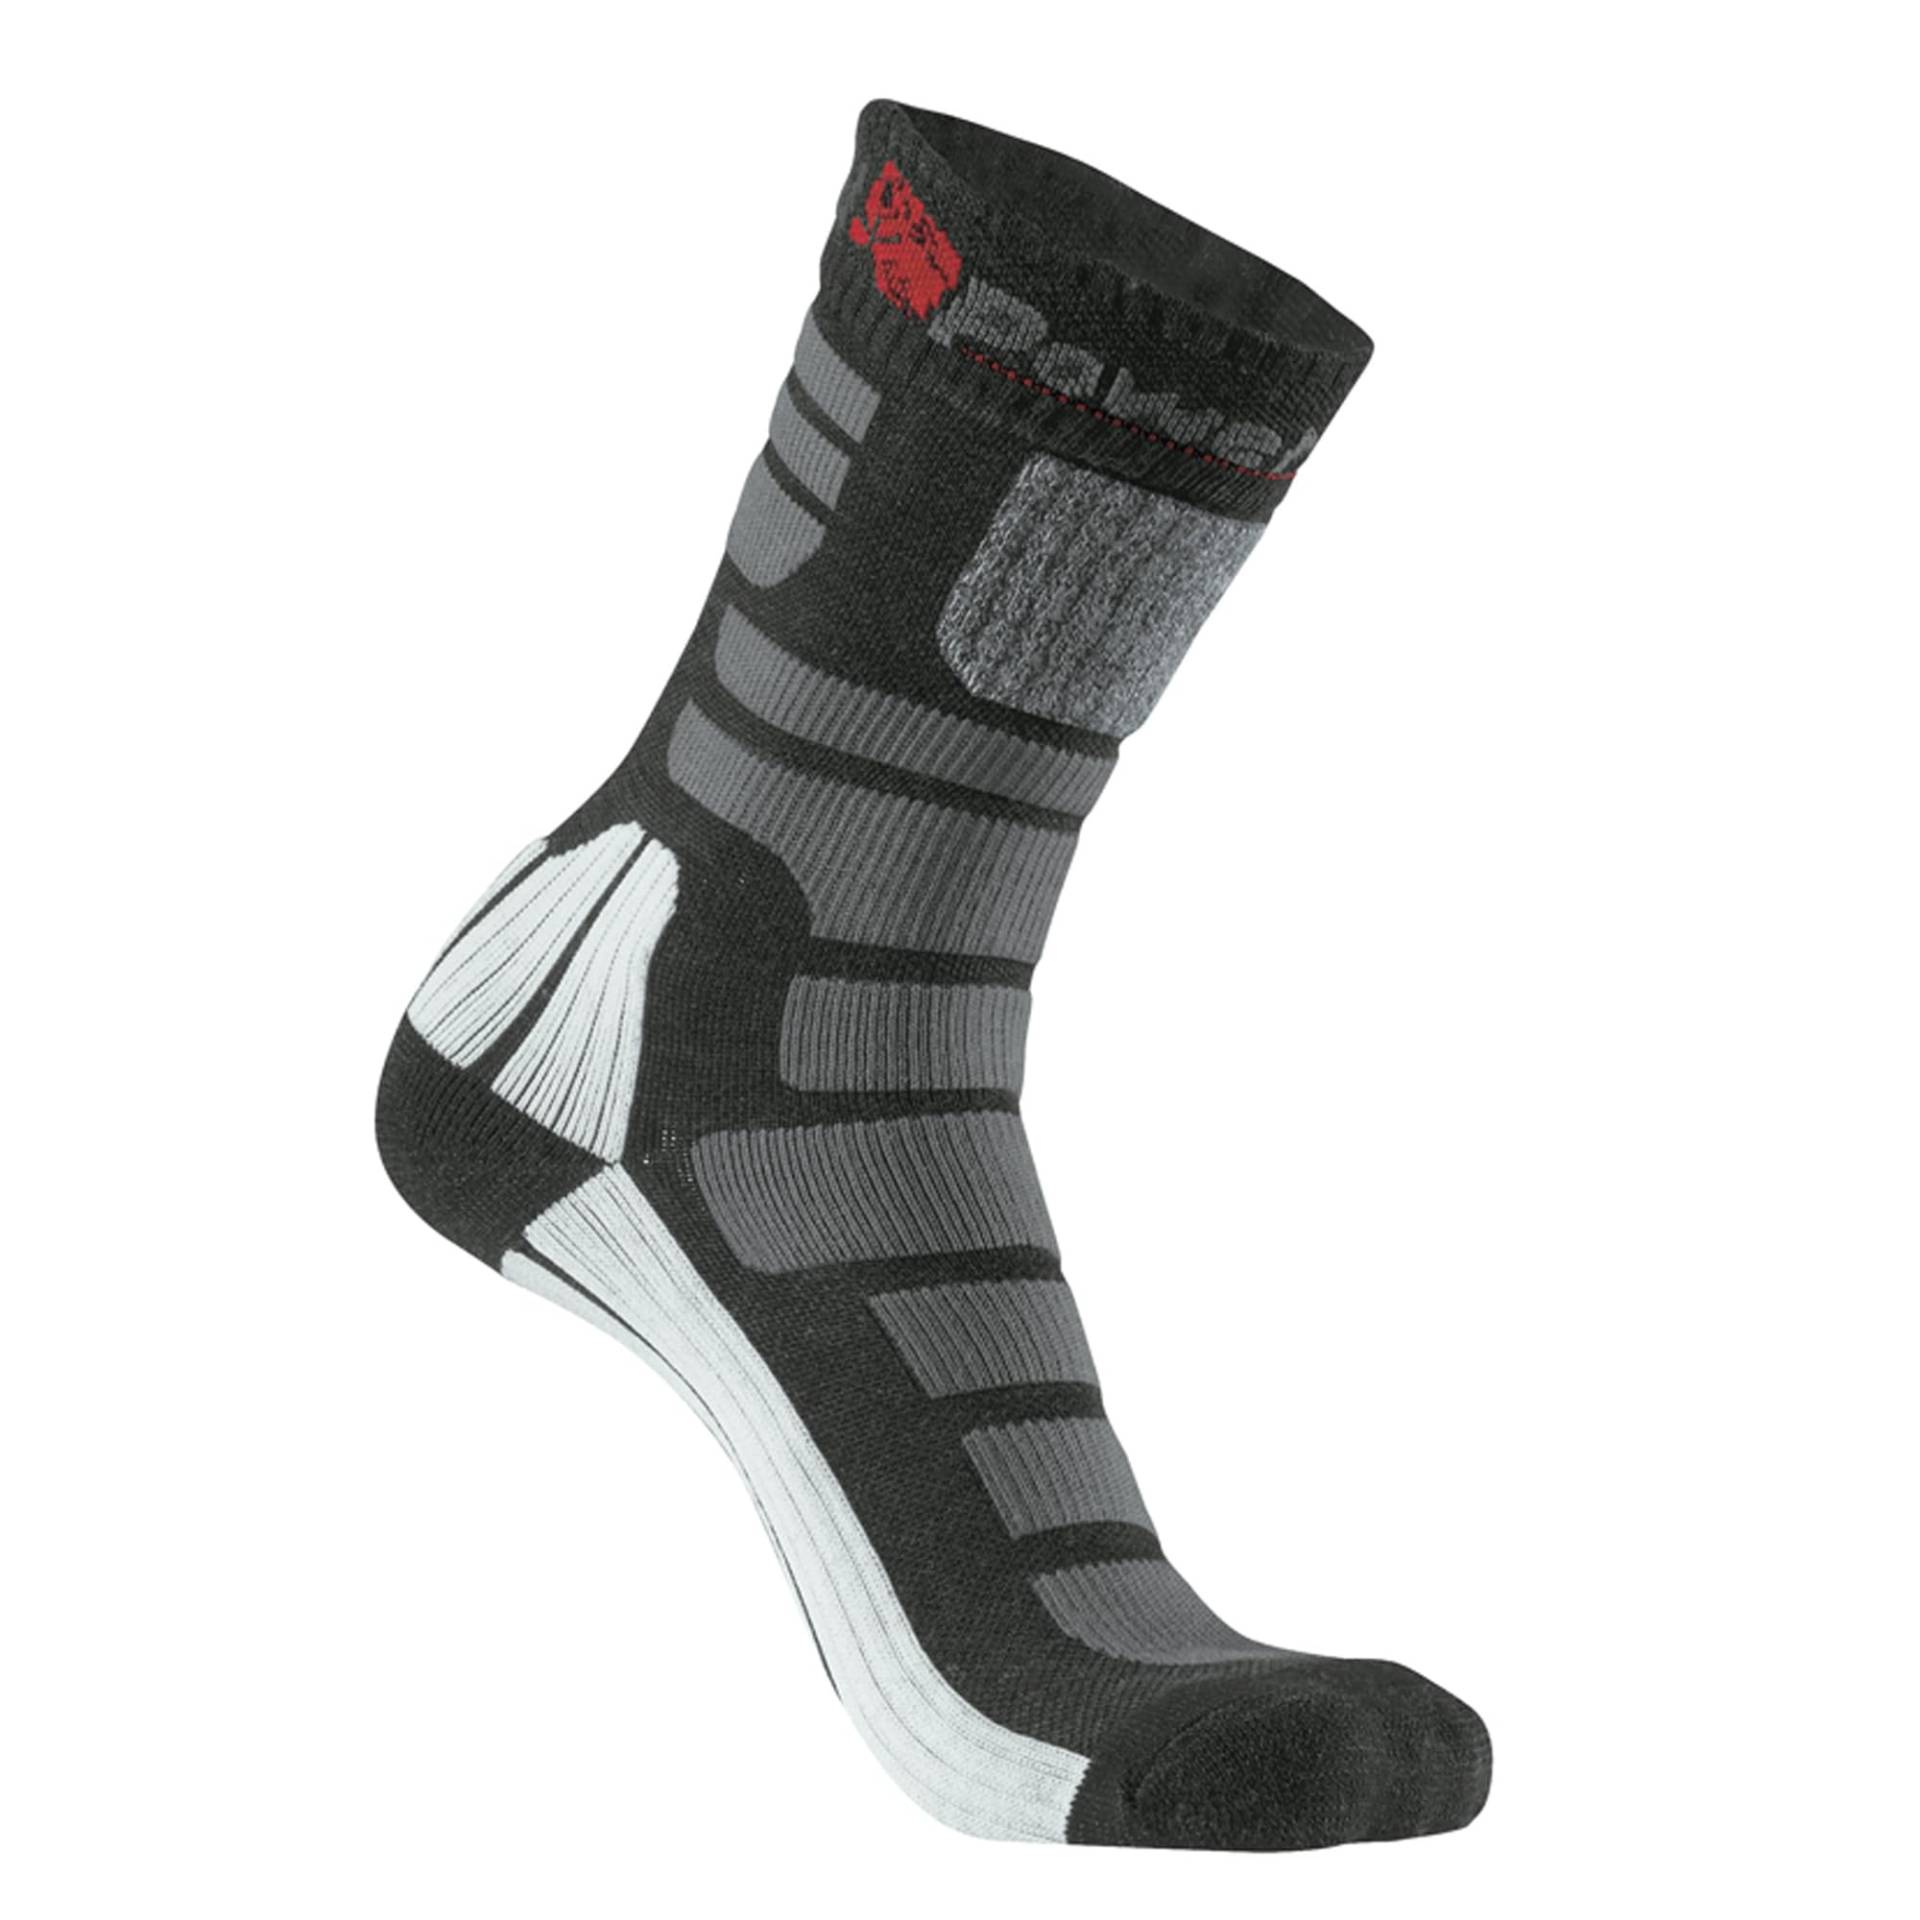 U-Power AIR Socken, lässige Arbeitskleidung, bequem, atmungsaktiv, schweißabweisend, gepolsterter Fuß, mit Stretch-Unterstützung, zum Laufen, Gehen, Training - Black Carbon S von U Power